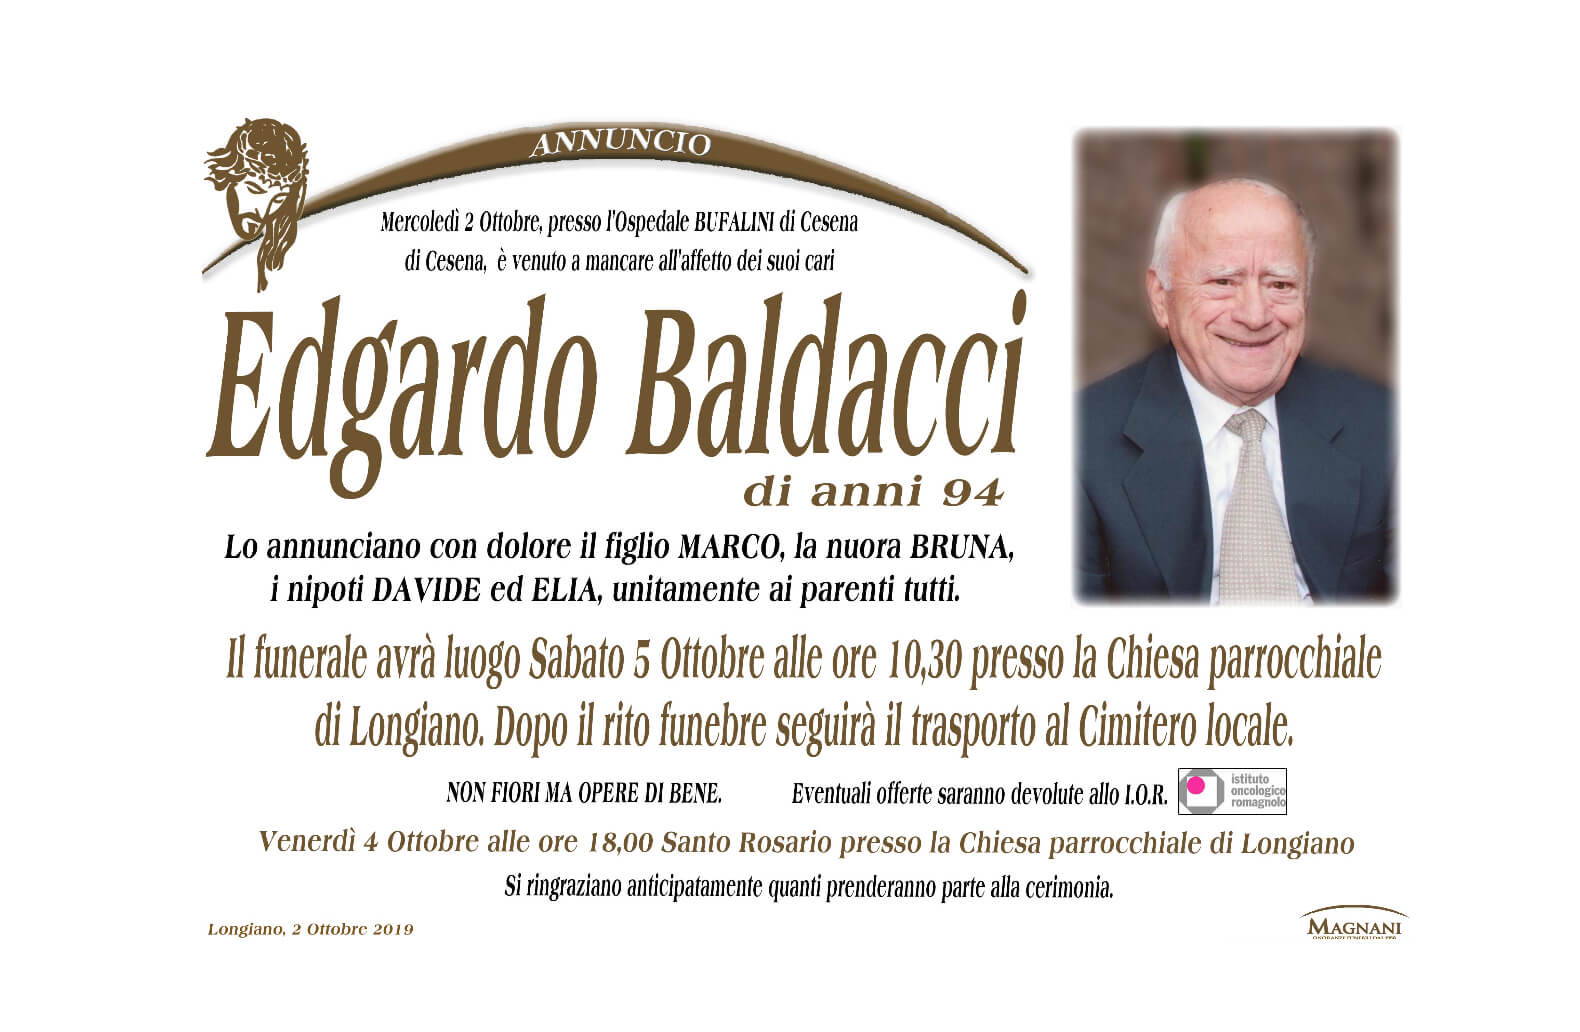 Edgardo Baldacci